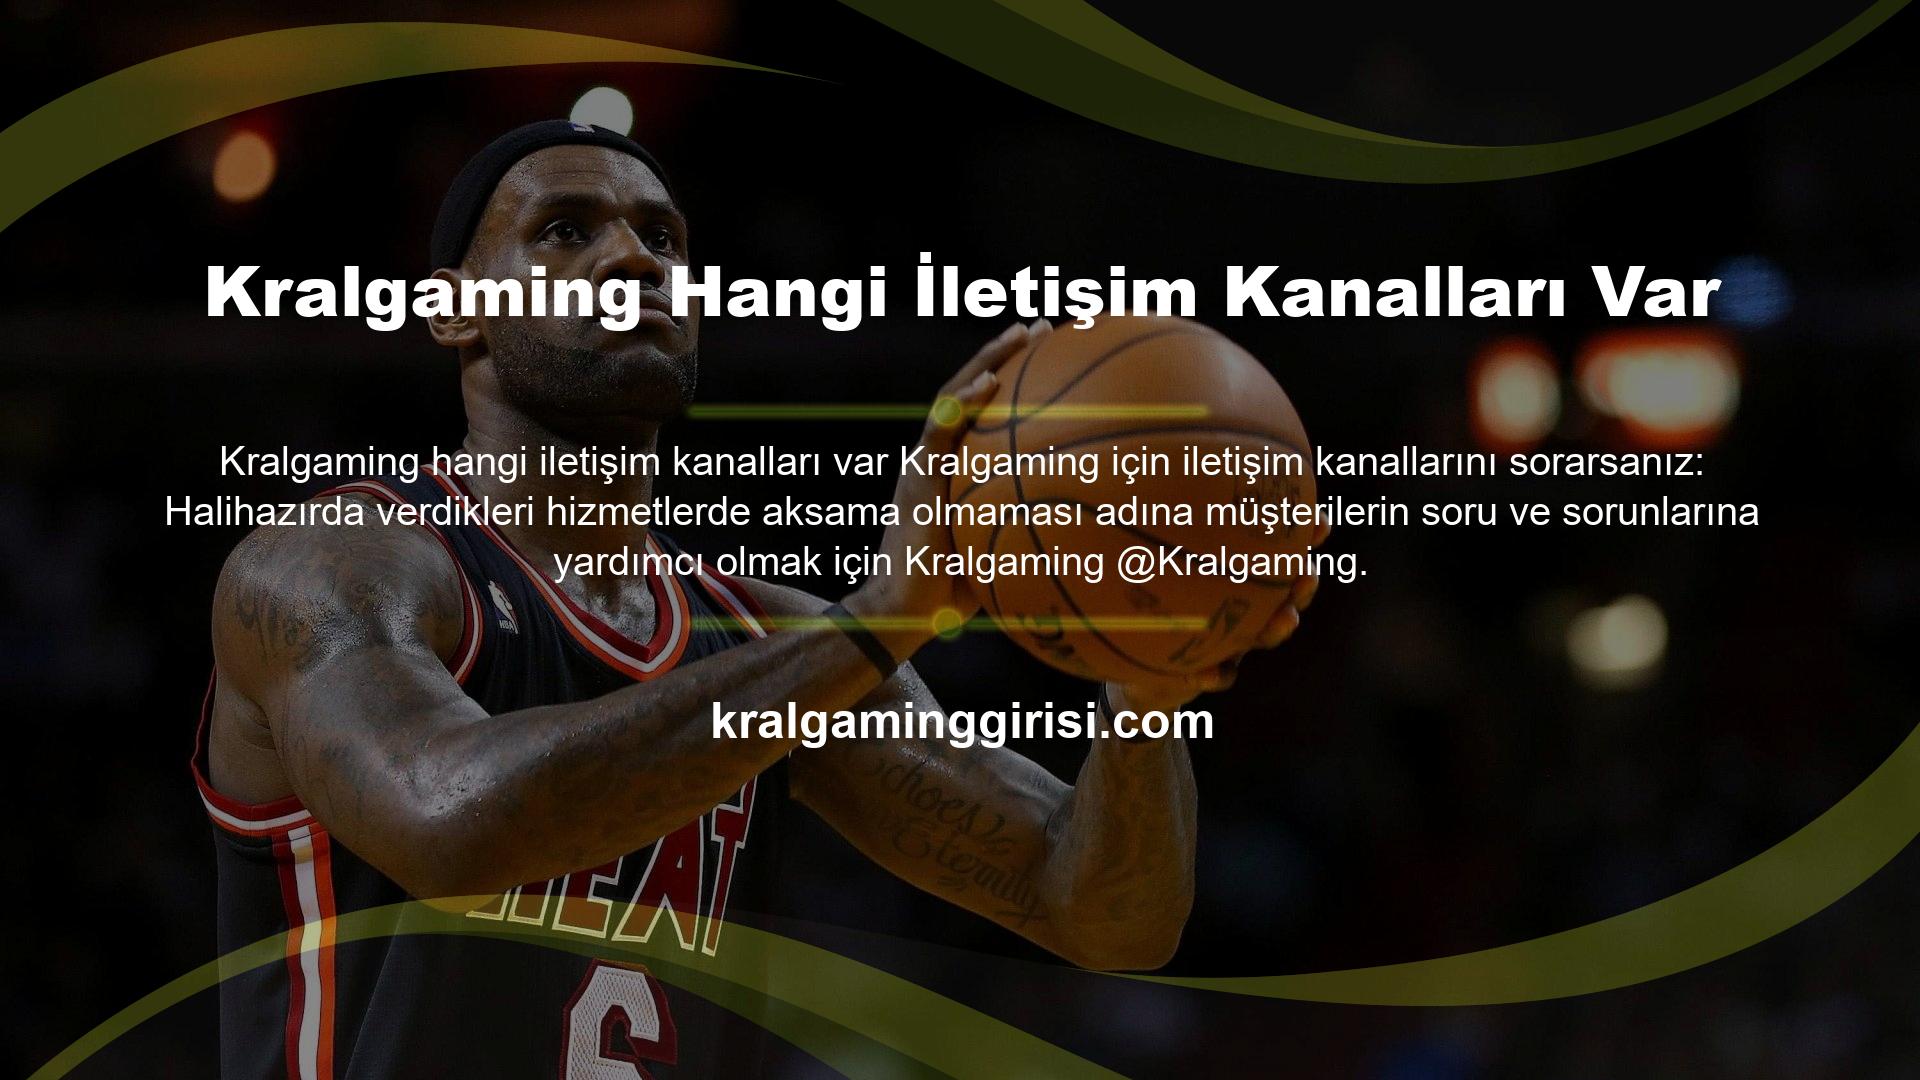 com, reklam çalışmaları için @Kralgaming